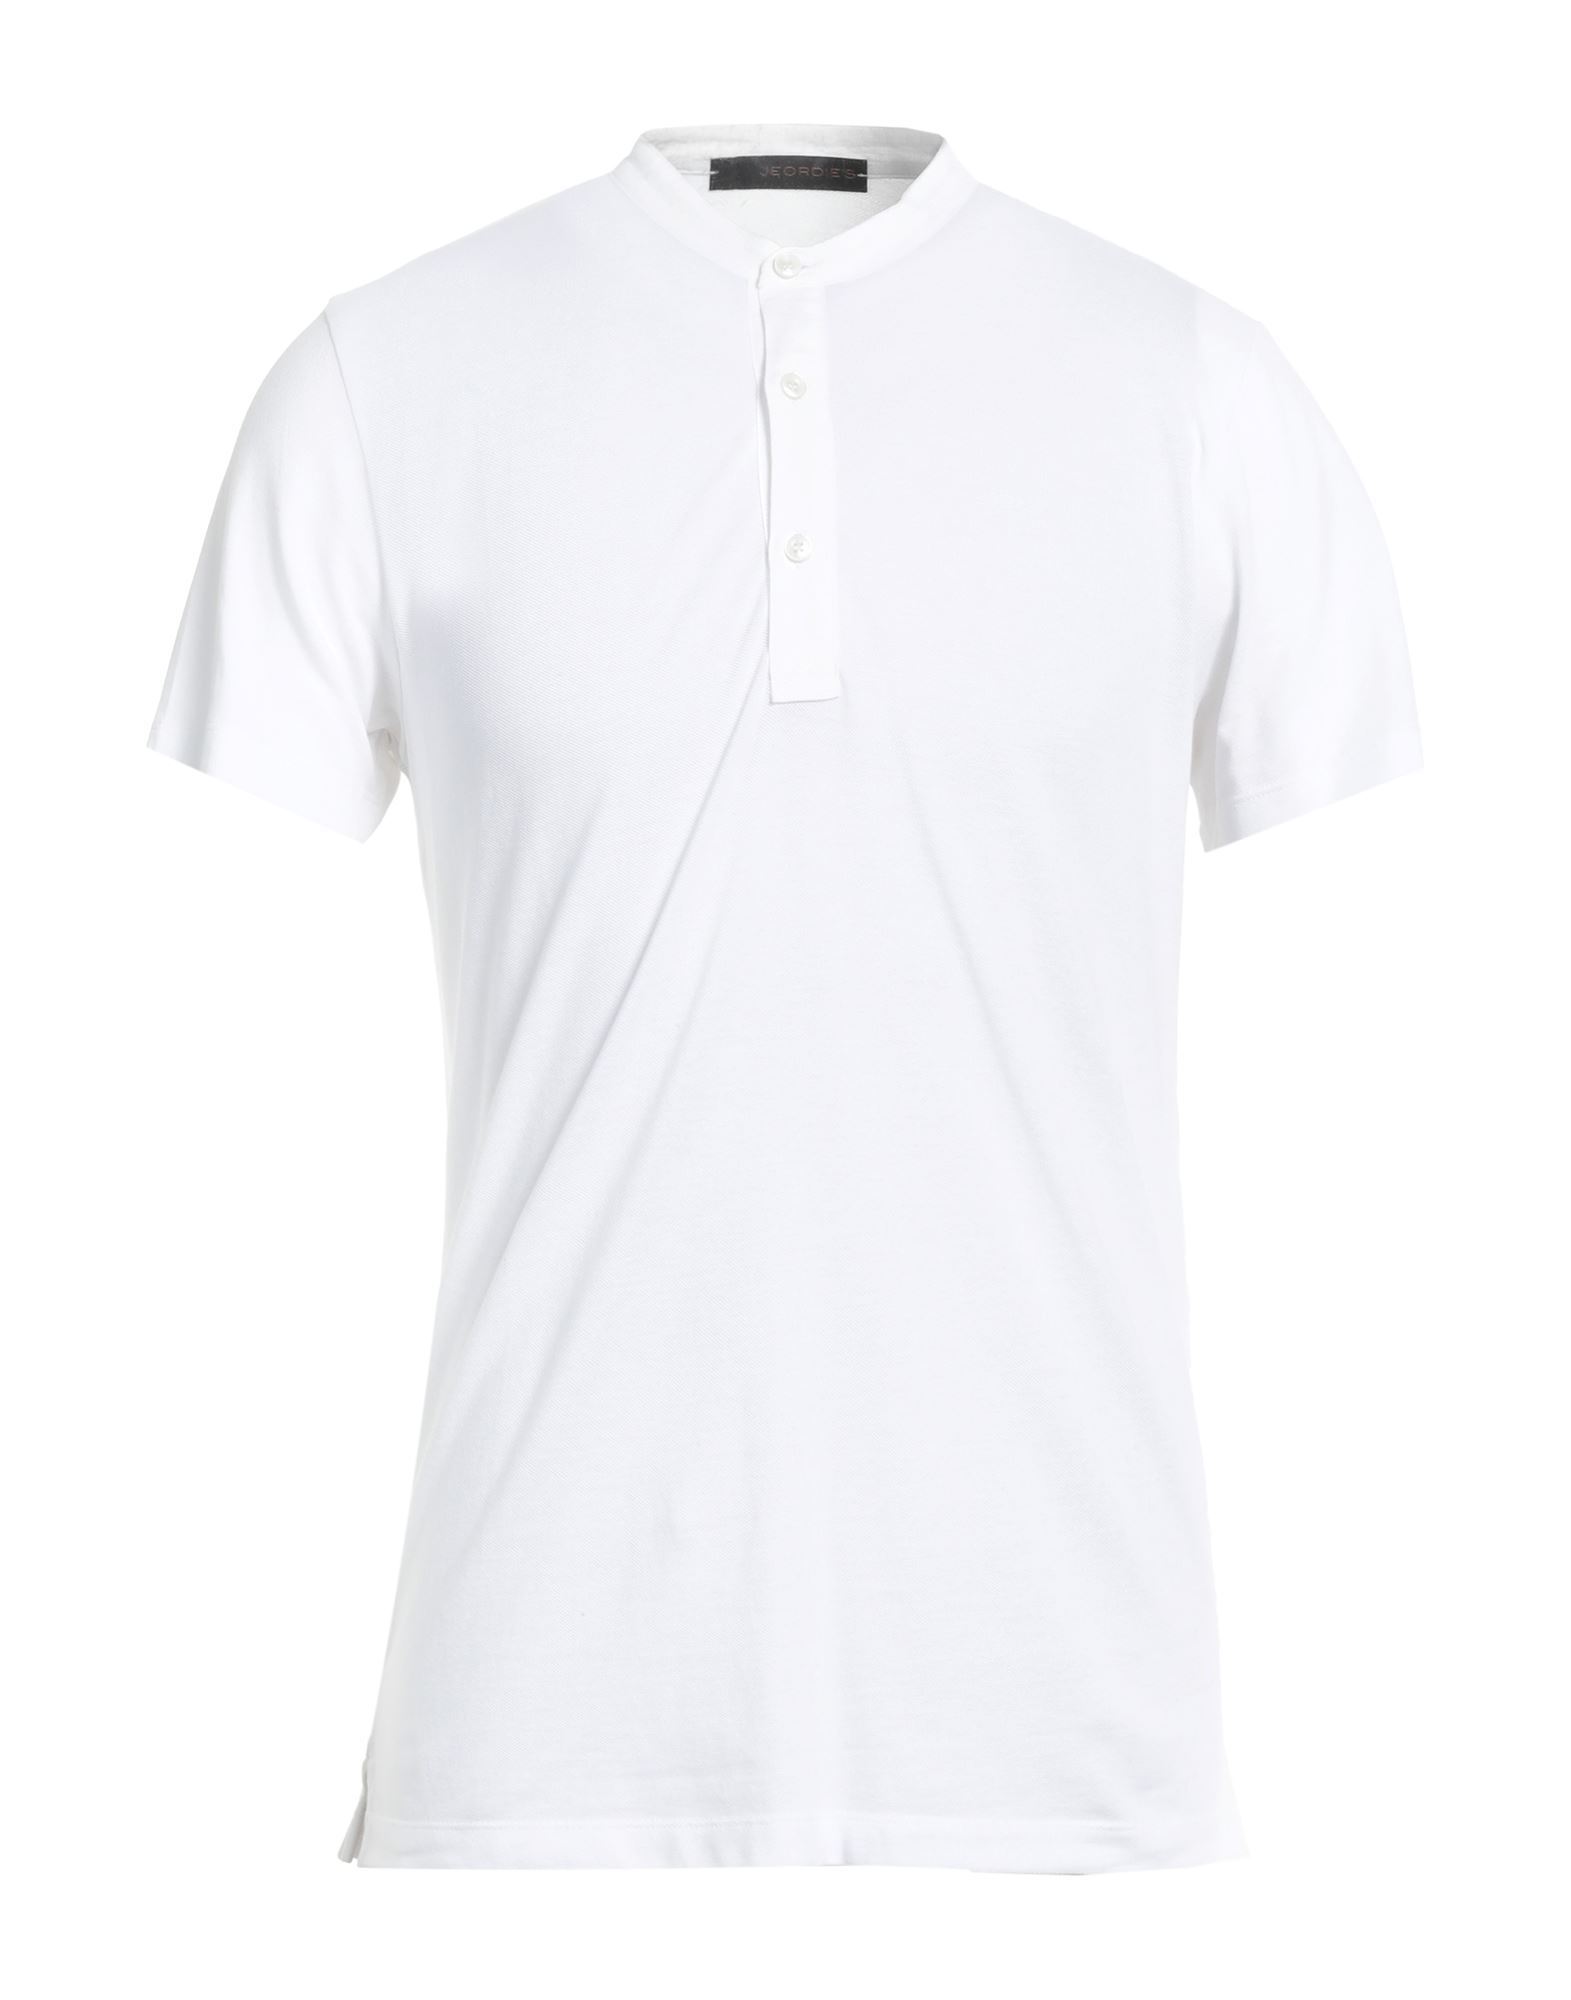 Jeordie's Man T-shirt White Size Xxl Cotton, Elastane